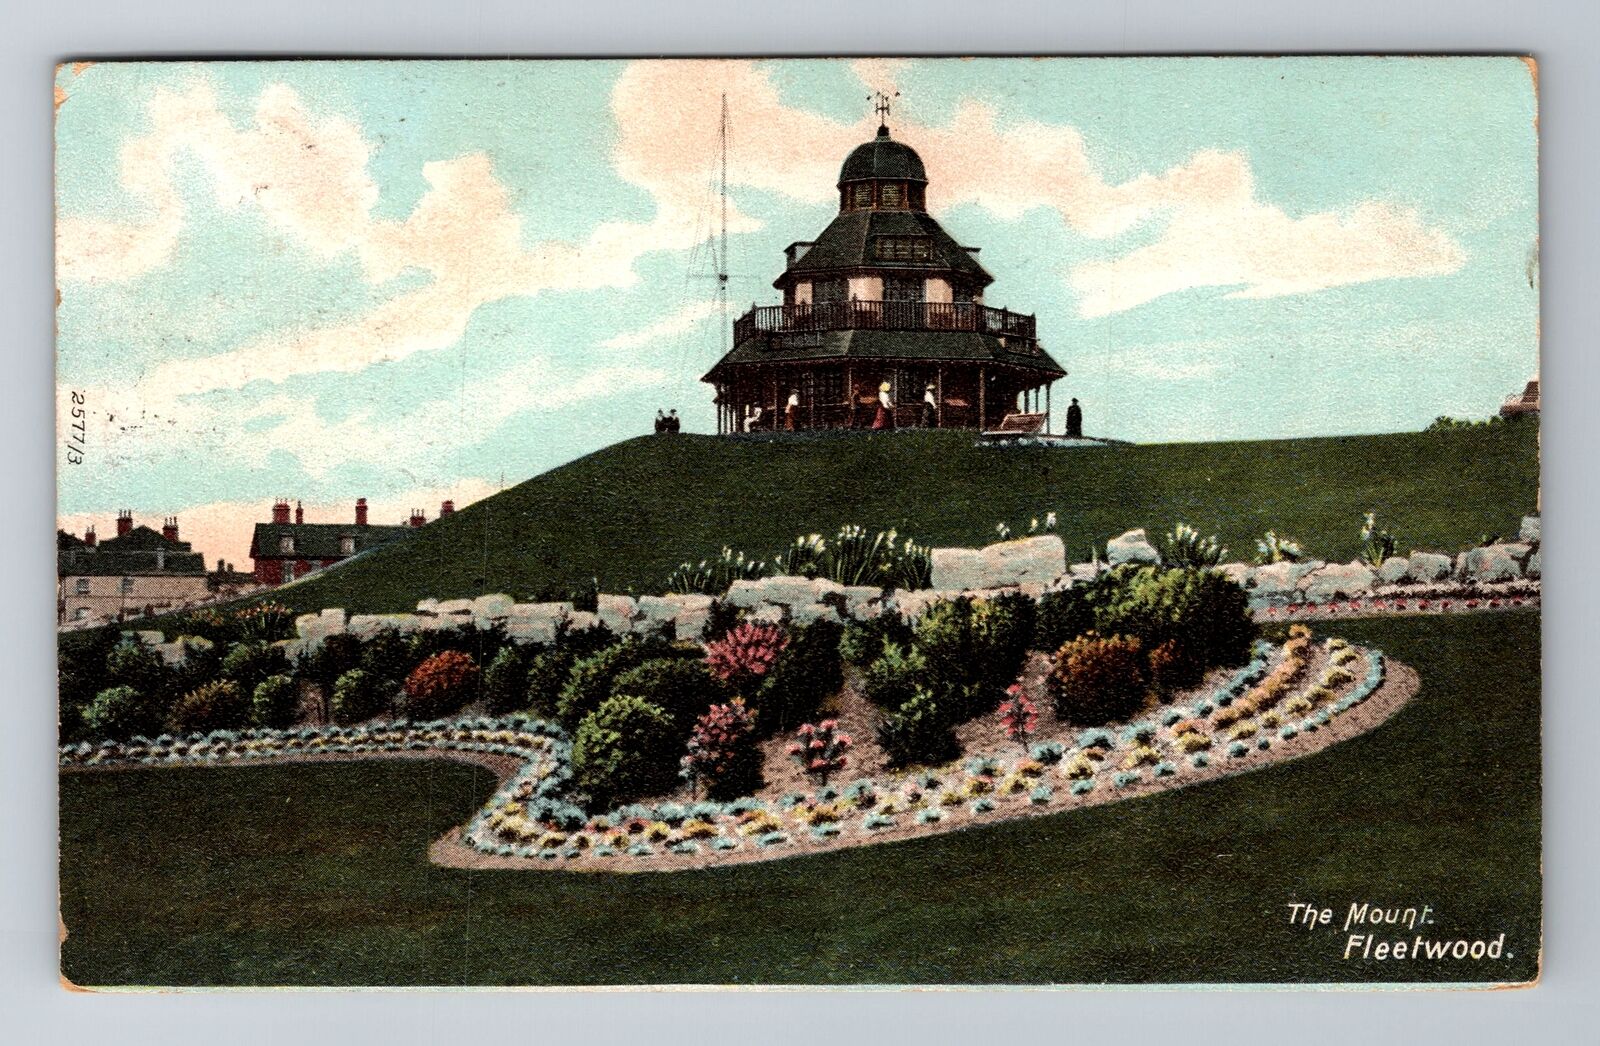 Fleetwood-England, The Mount, Antique, Vintage Souvenir Postcard